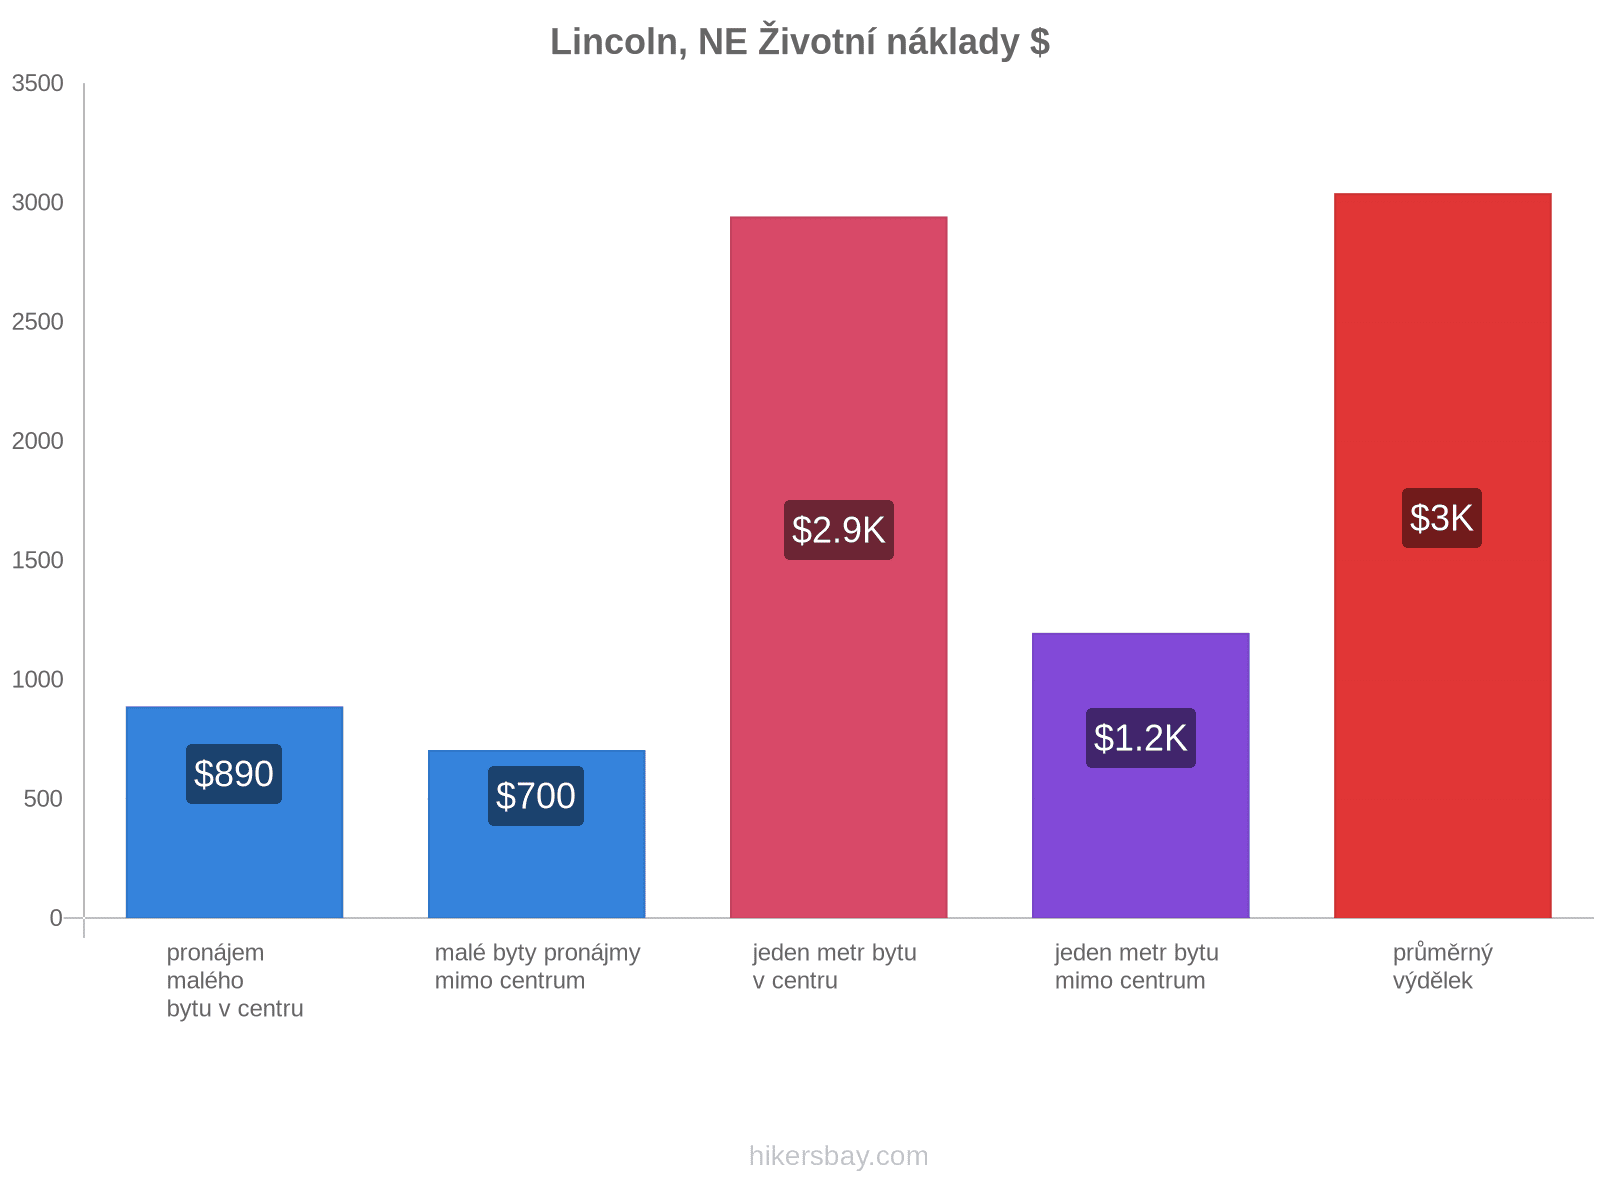 Lincoln, NE životní náklady hikersbay.com